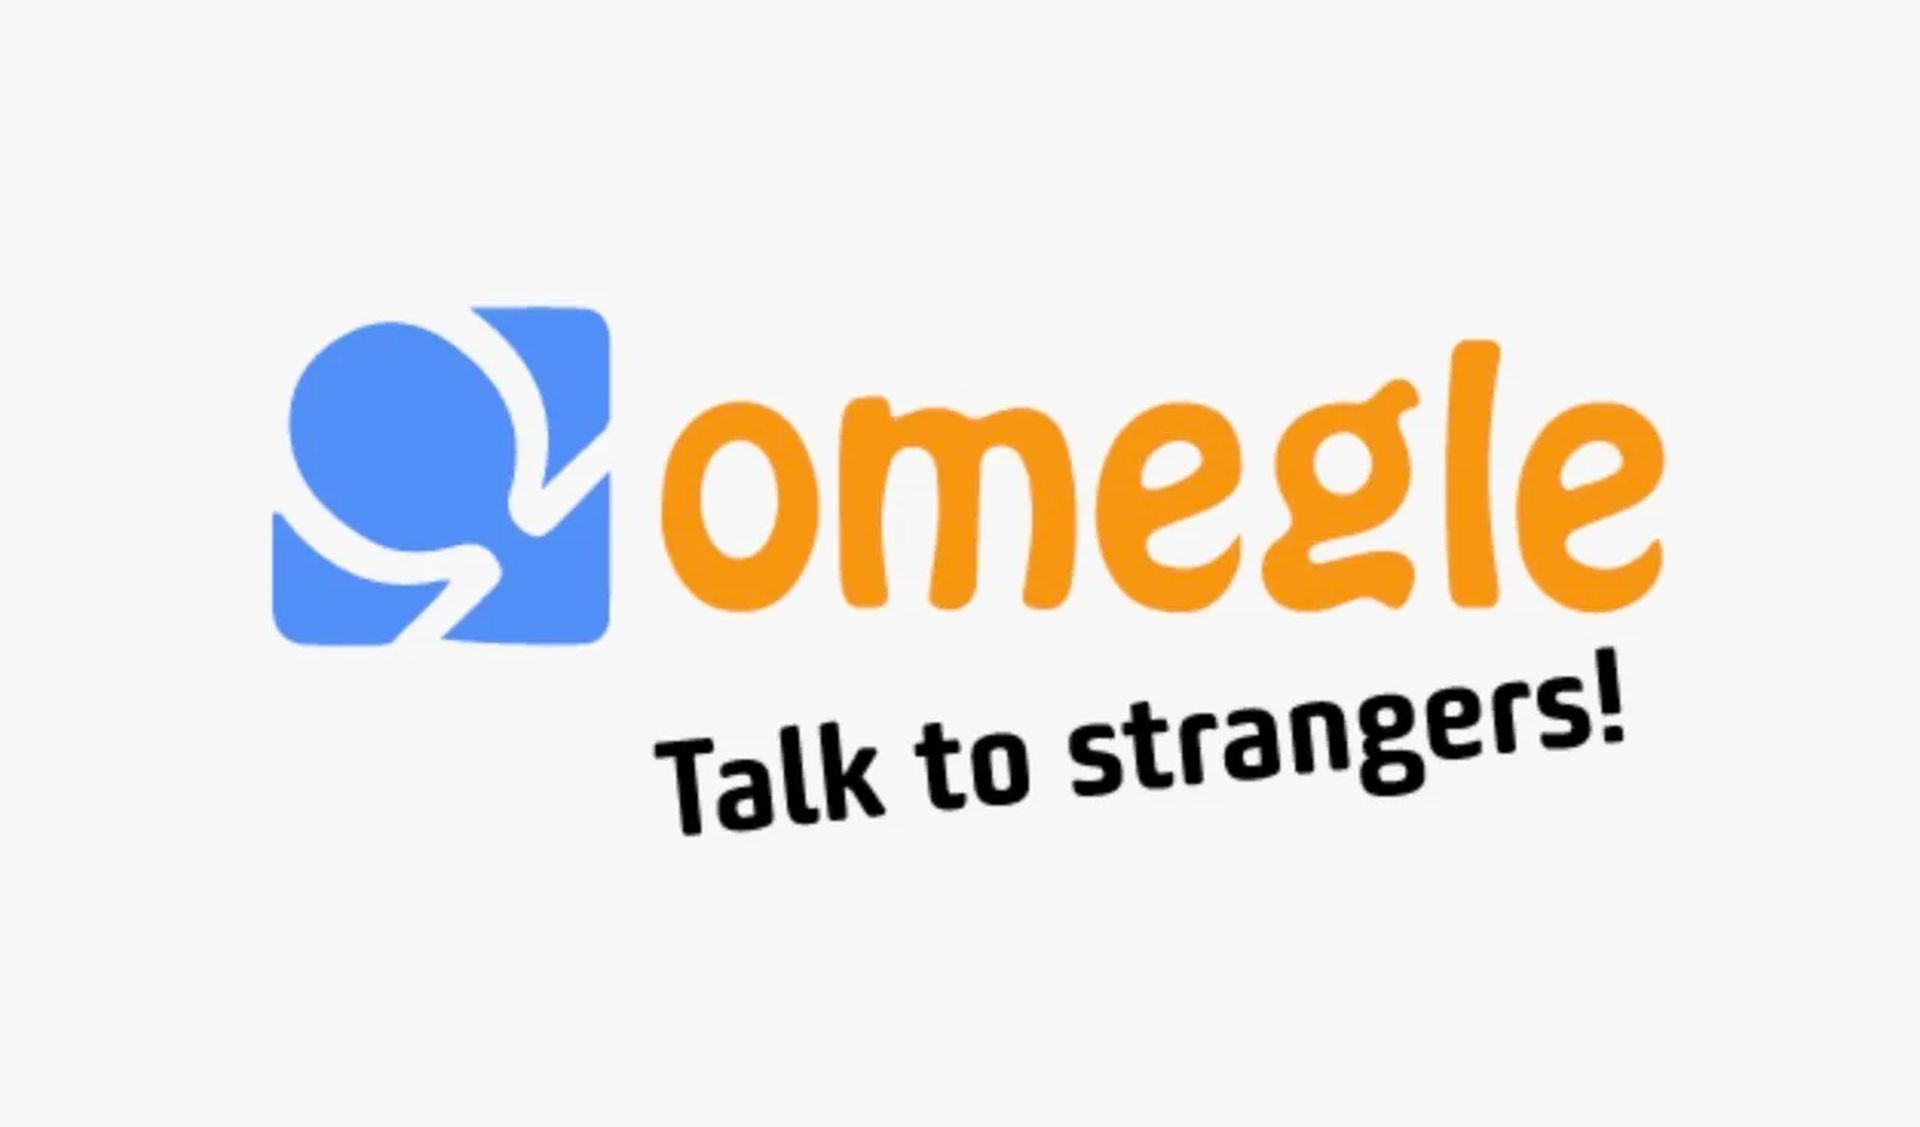 Dans cet article, nous allons expliquer comment corriger l'erreur Omegle lors de la connexion au serveur, afin que vous puissiez utiliser le site populaire et continuer à discuter avec de nouvelles personnes.